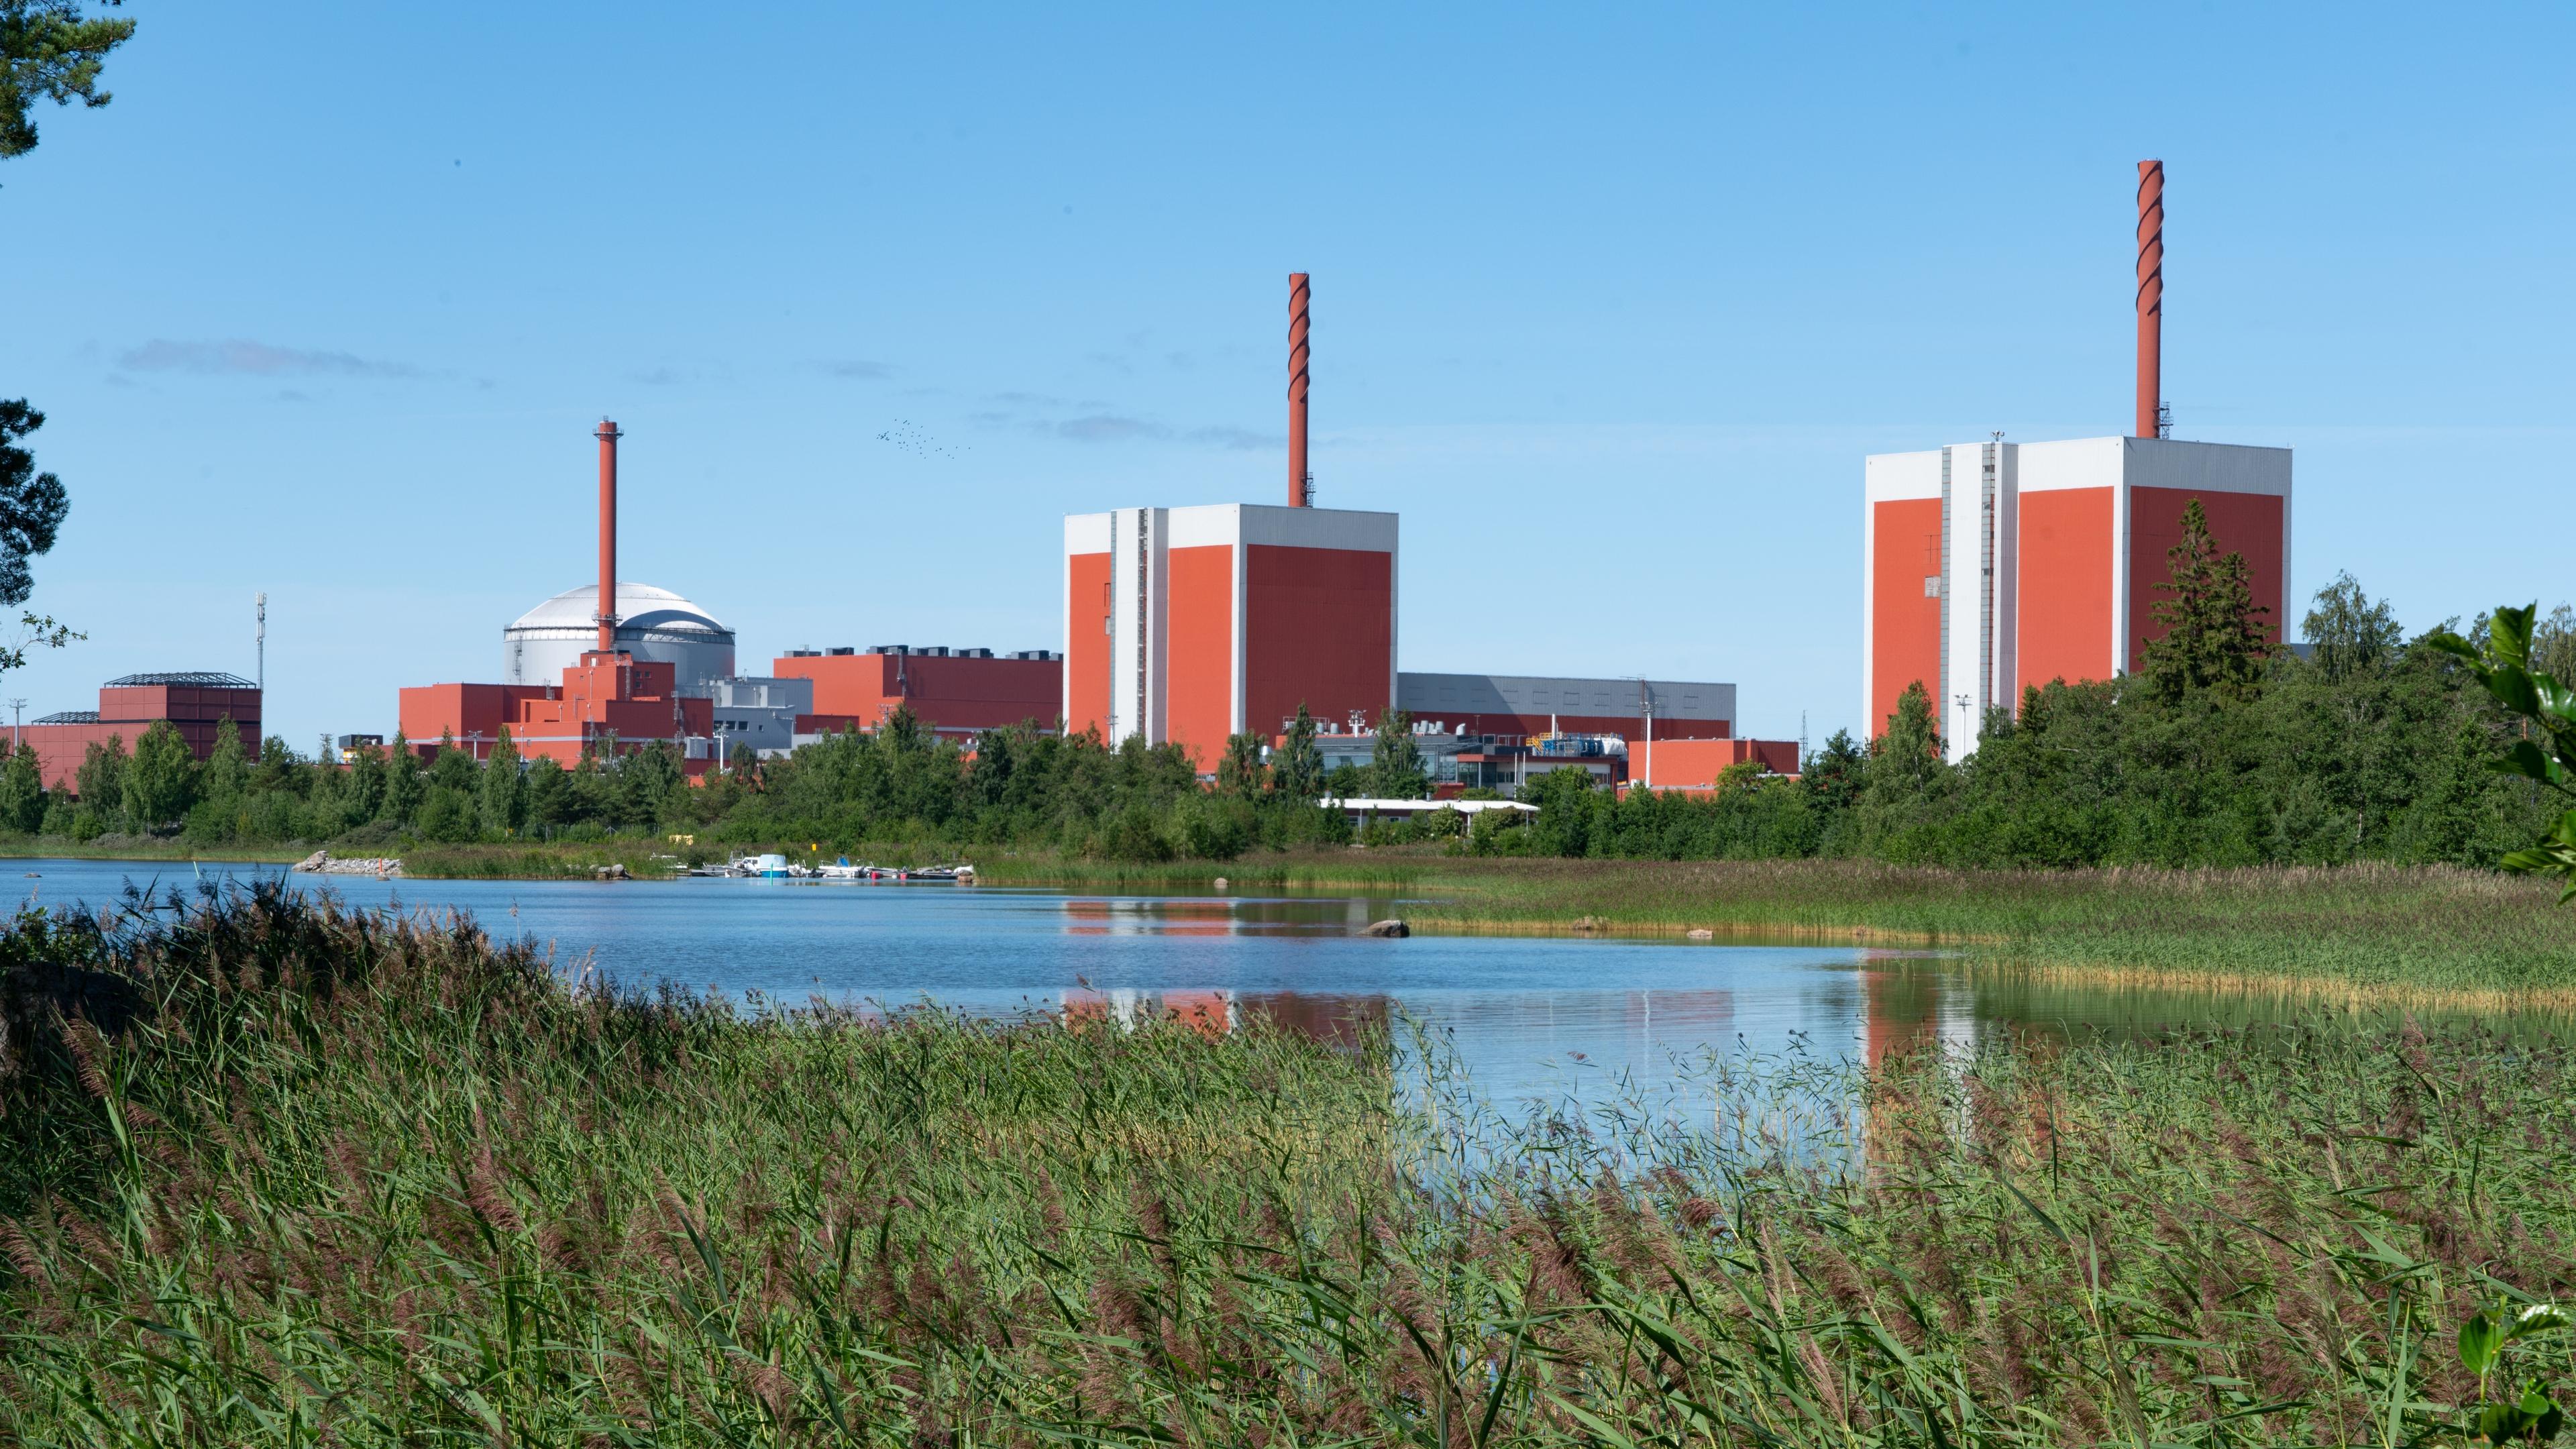 Den nya reaktorn i Olkiluoto (den runda byggnaden i mitten) har nu lett till lägre elpriser i Finland. Bygget av den tog längre tid än planerat. Foto: M.Pakats/Shutterstock